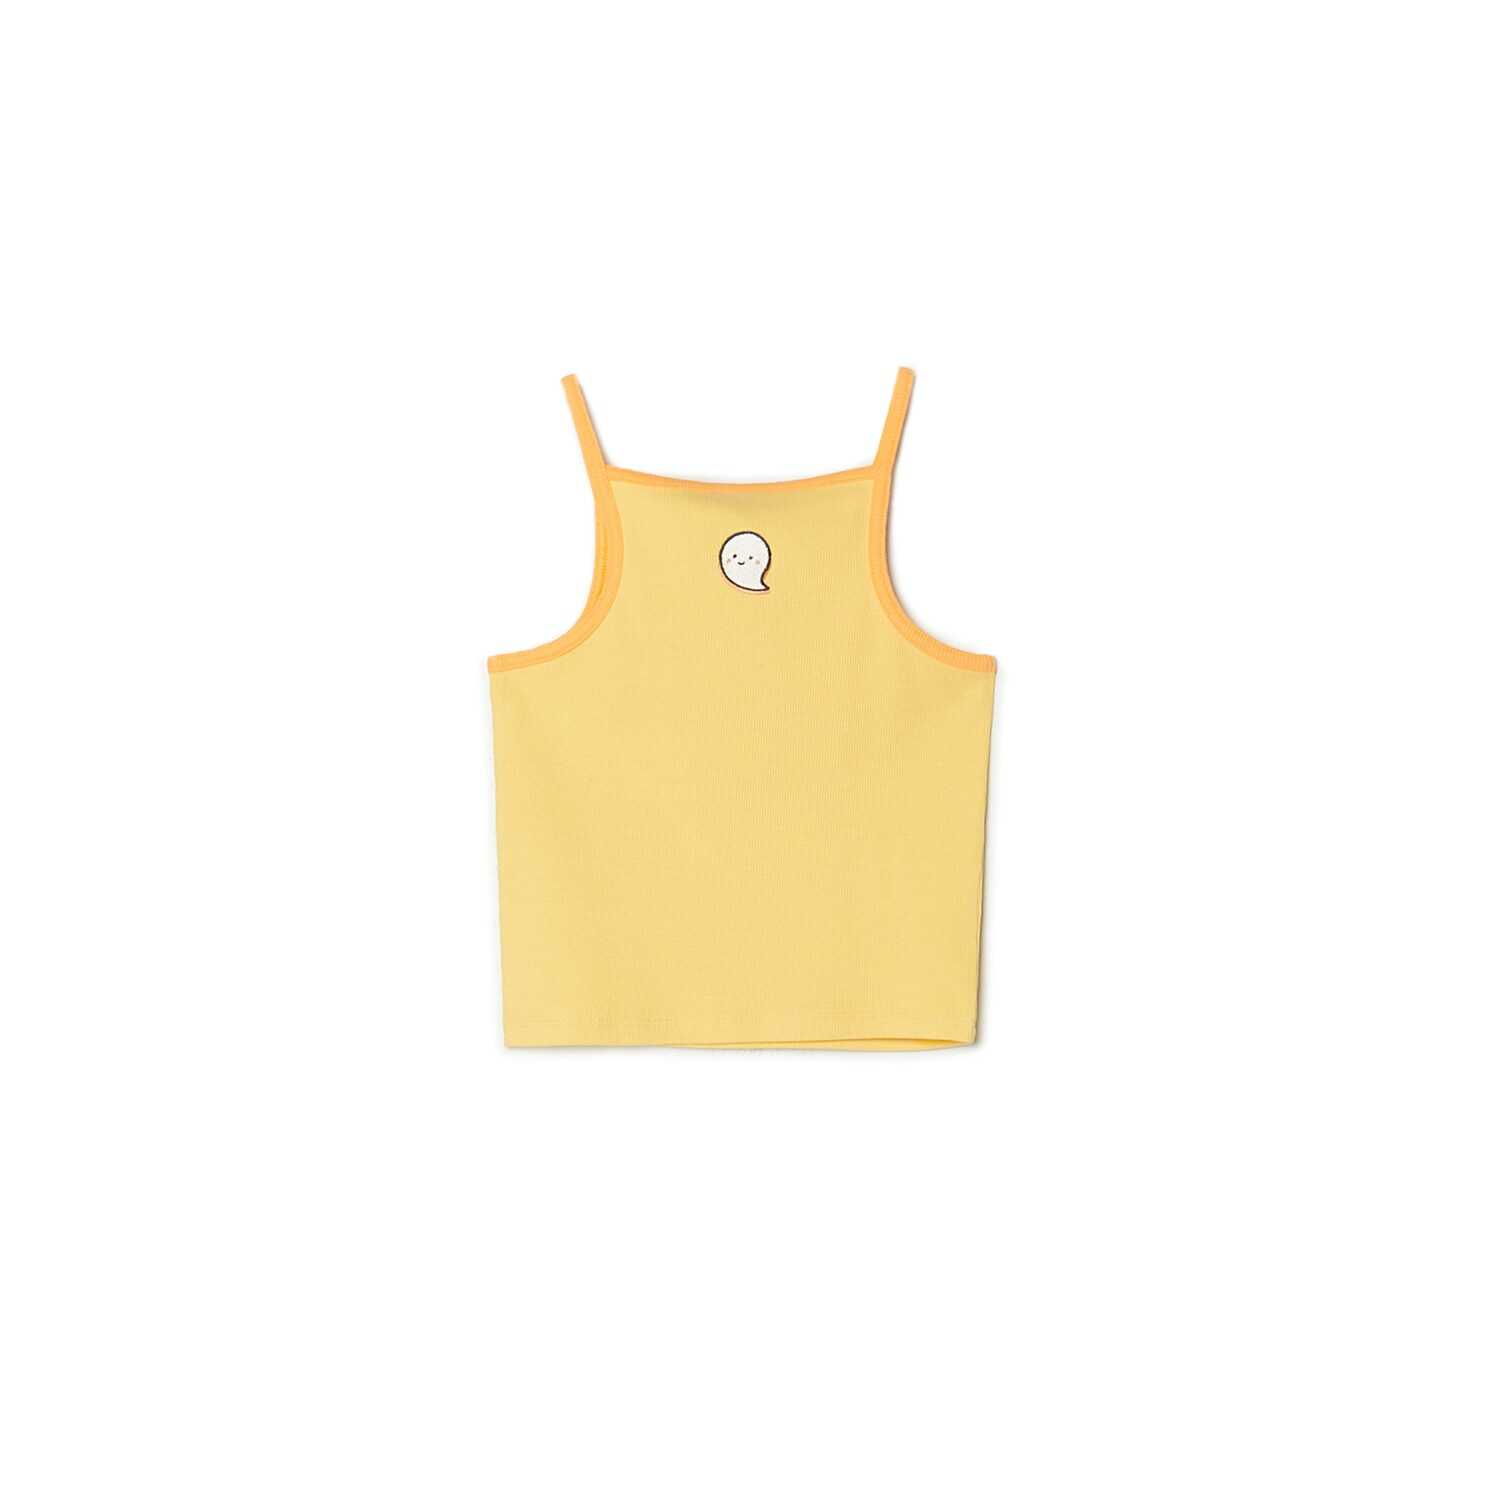 Cropp - Żółta koszulka na ramiączkach - Żółty